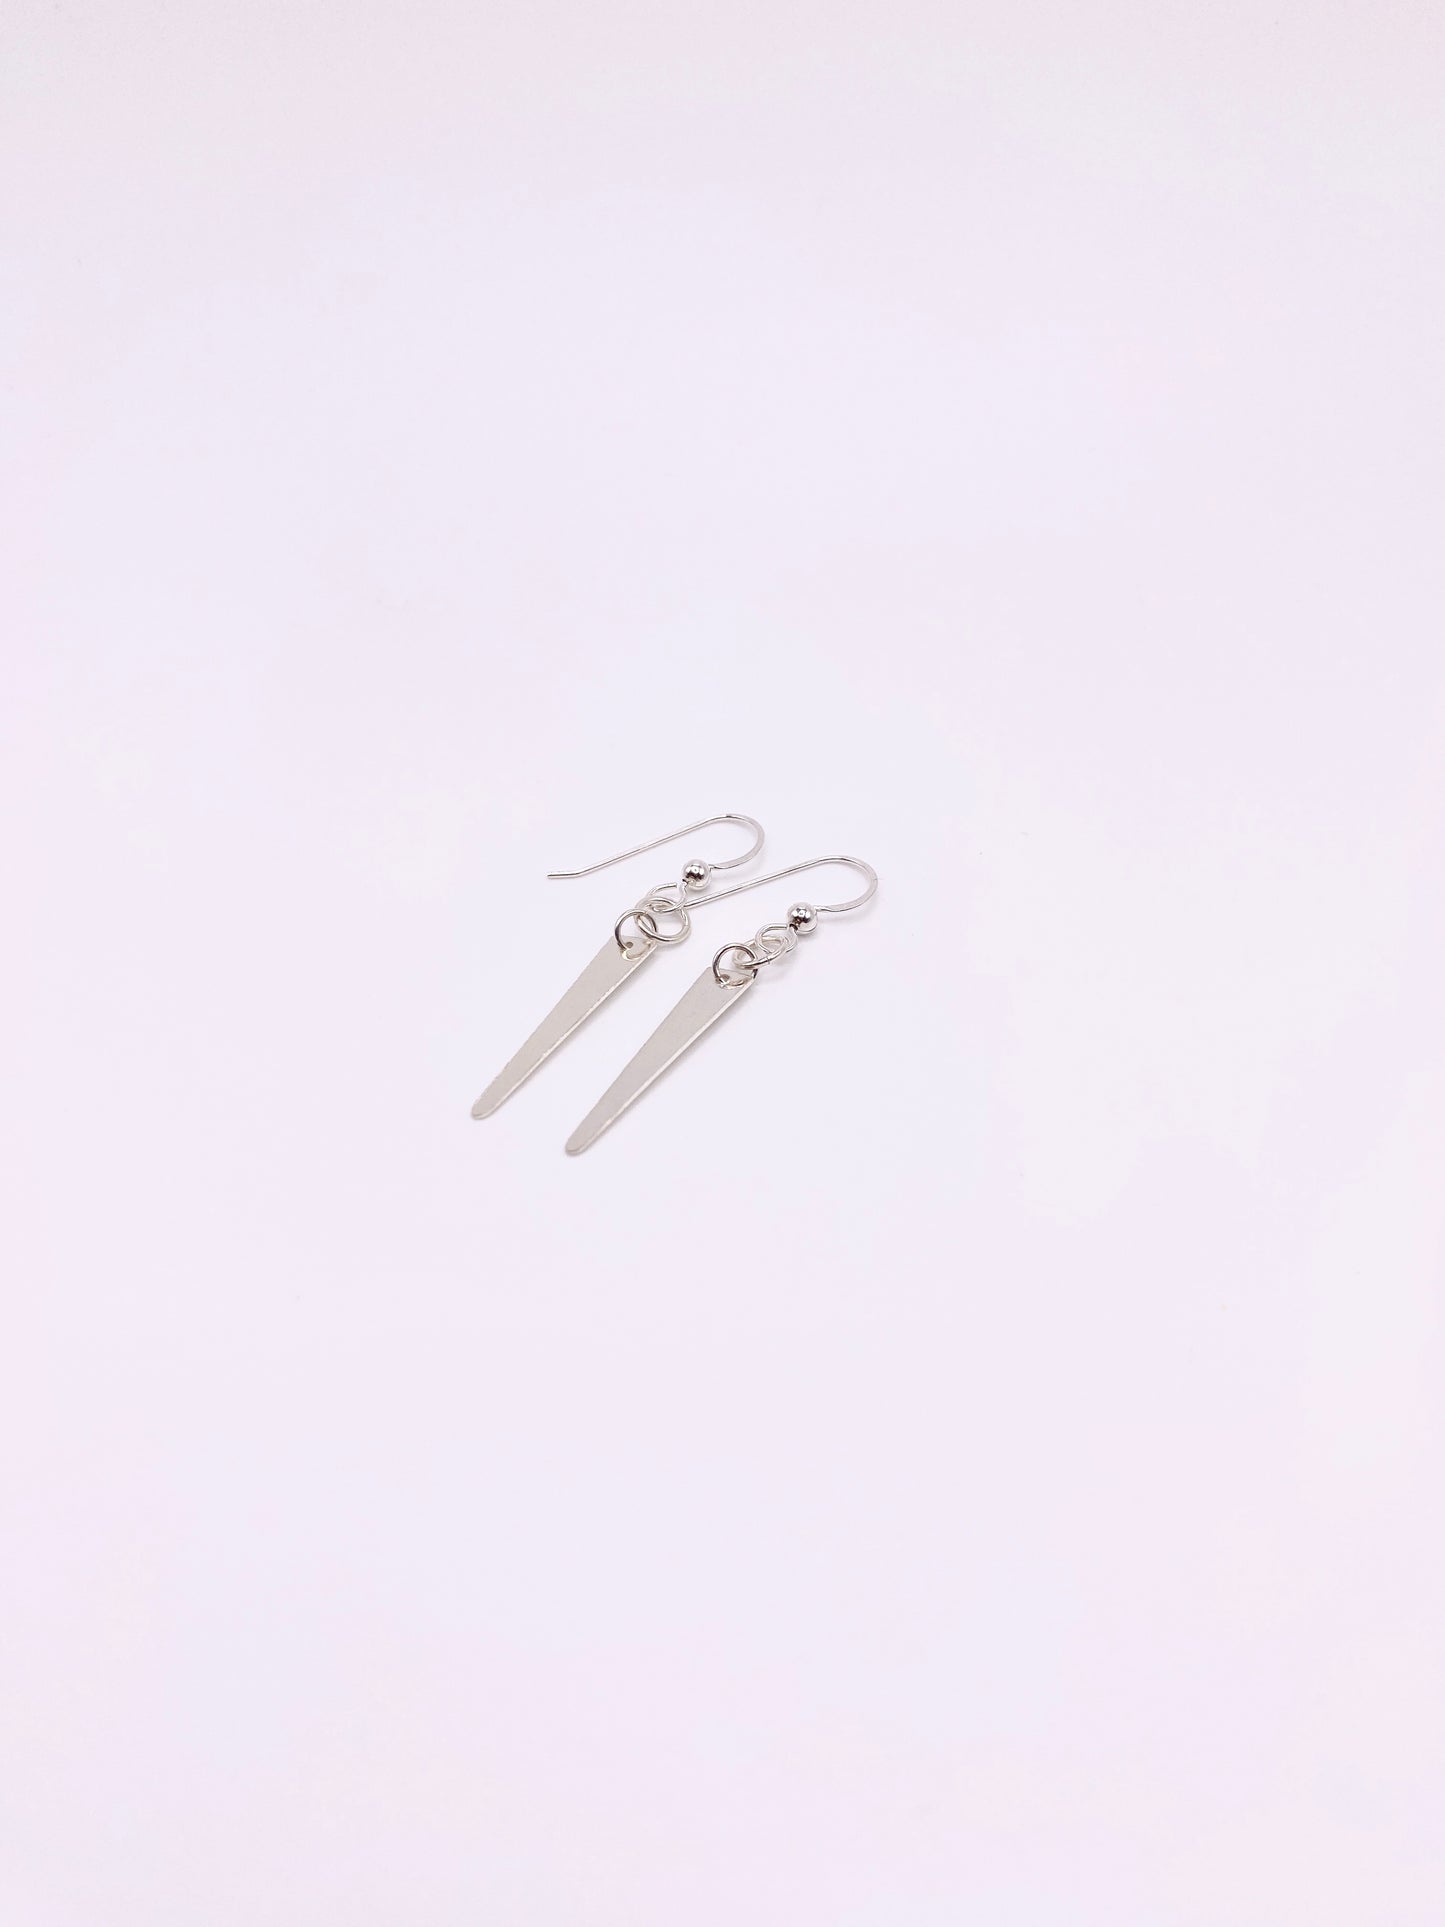 Trapezoid Beamer Earrings in .925 Sterling Silver